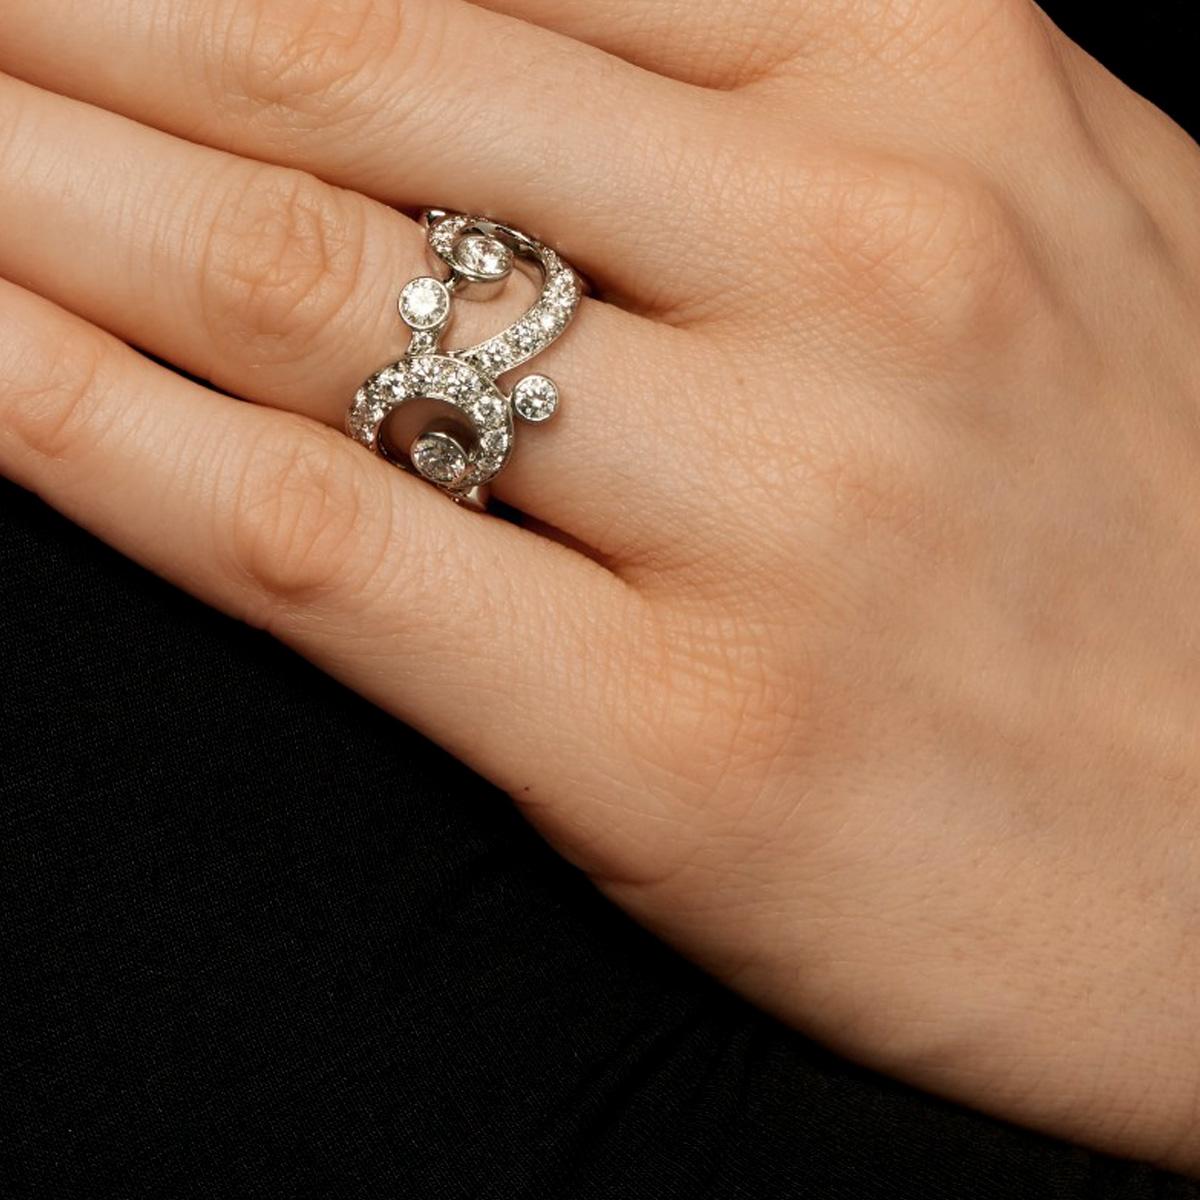 Ein prächtiger Cartier-Diamantring mit einem Freiform-Motiv, besetzt mit feinsten runden Diamanten im Brillantschliff in Platin. Ca. 4,56ct.

Der Ring misst eine Größe 6